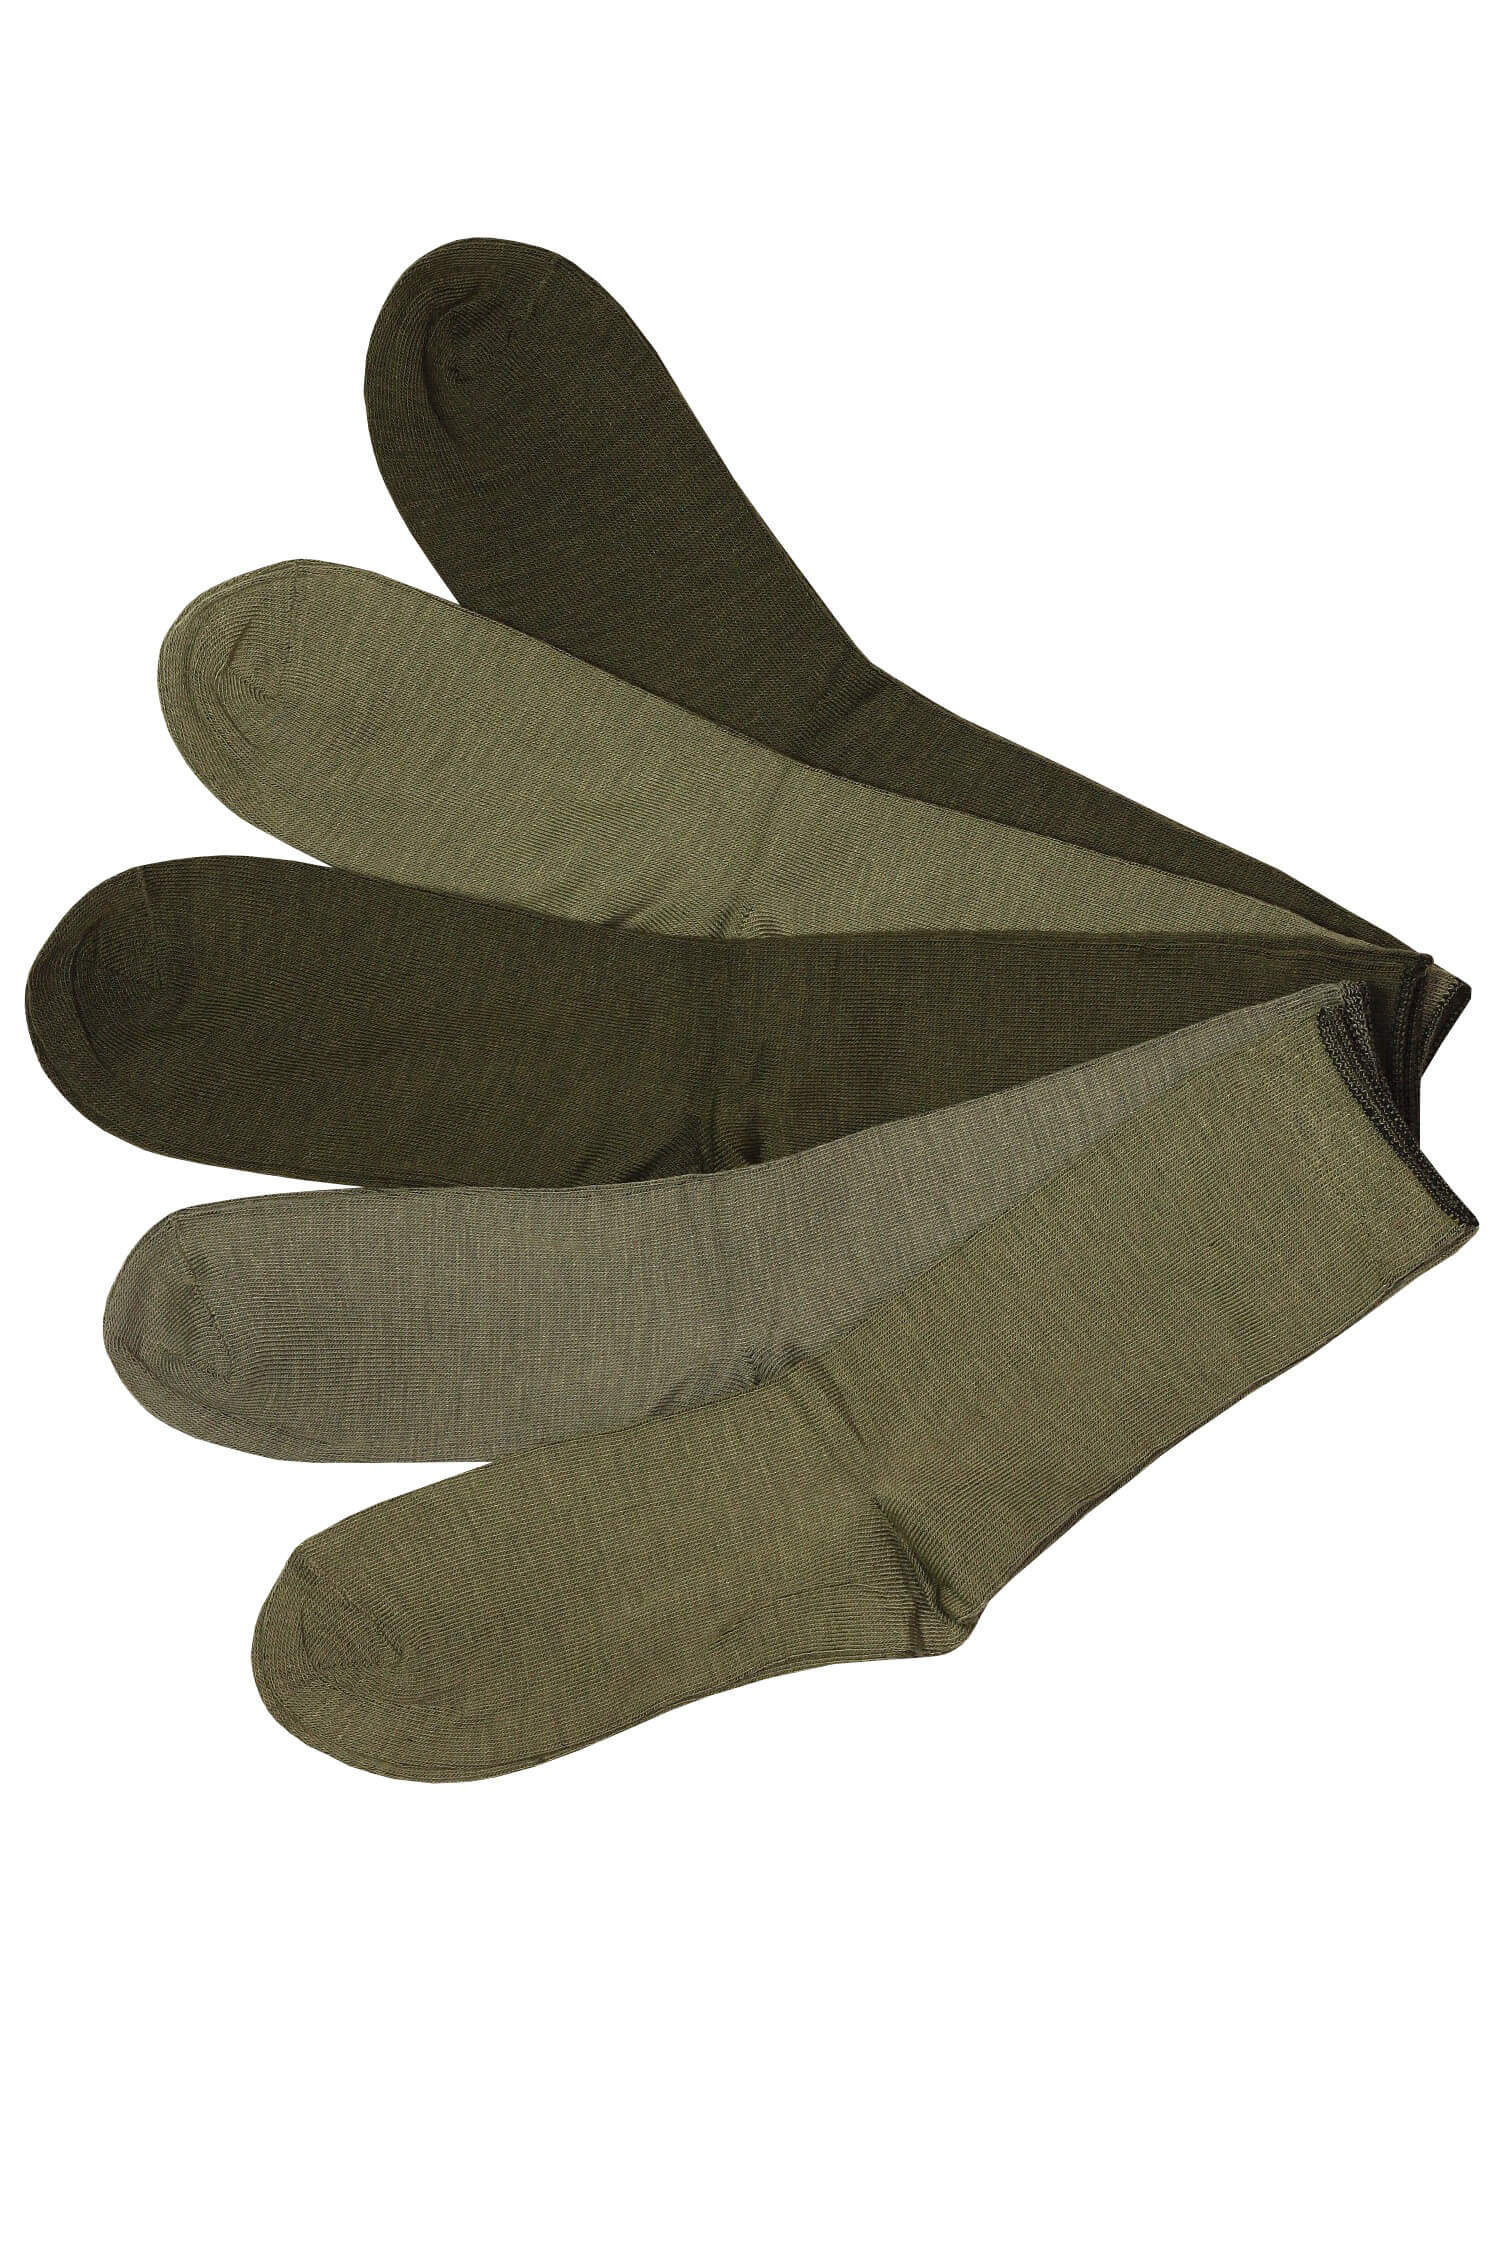 Pánské vysoké ponožky 100% bavlna rybářské ZTY-1632 5bal. 39-42 vícebarevná